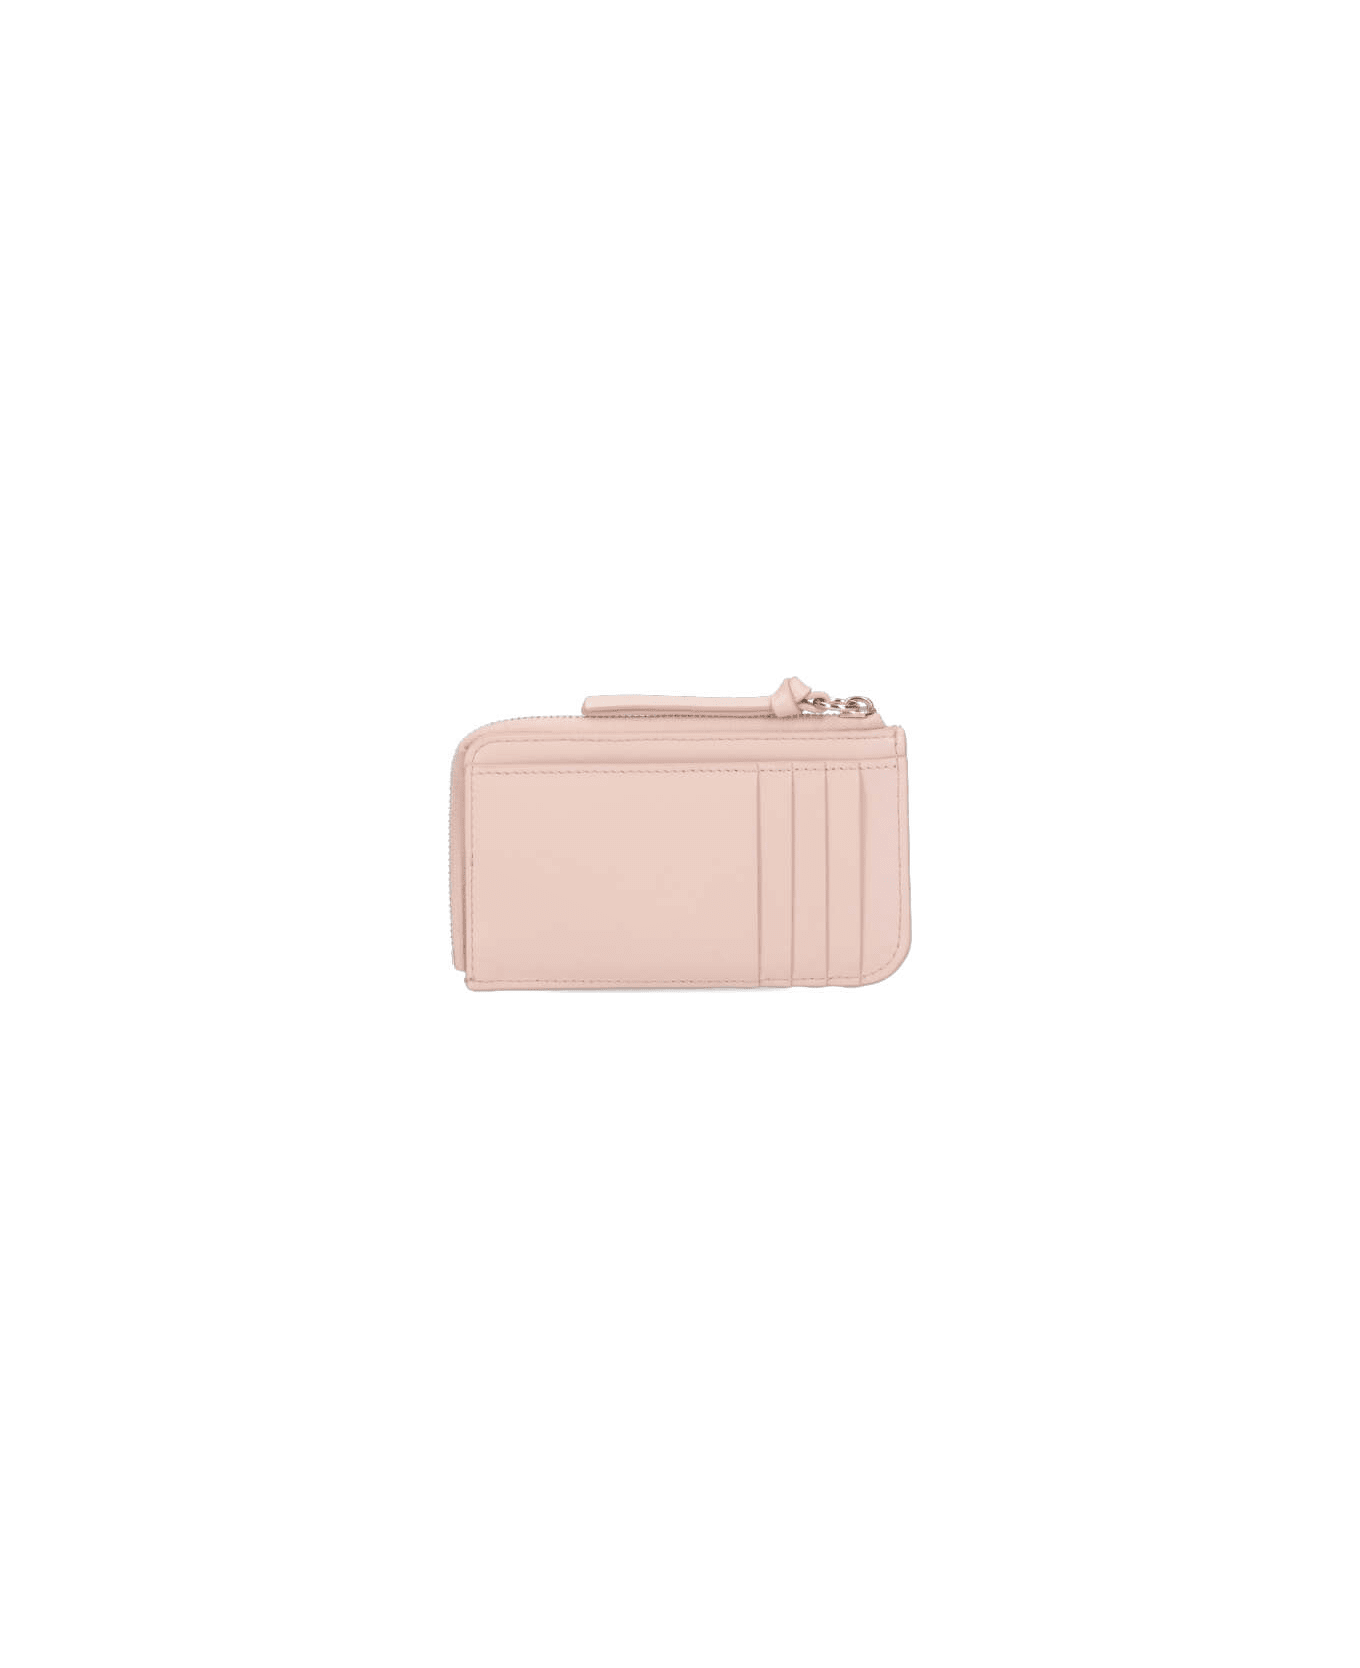 Chloé Zipped Card Holder - Pink 財布